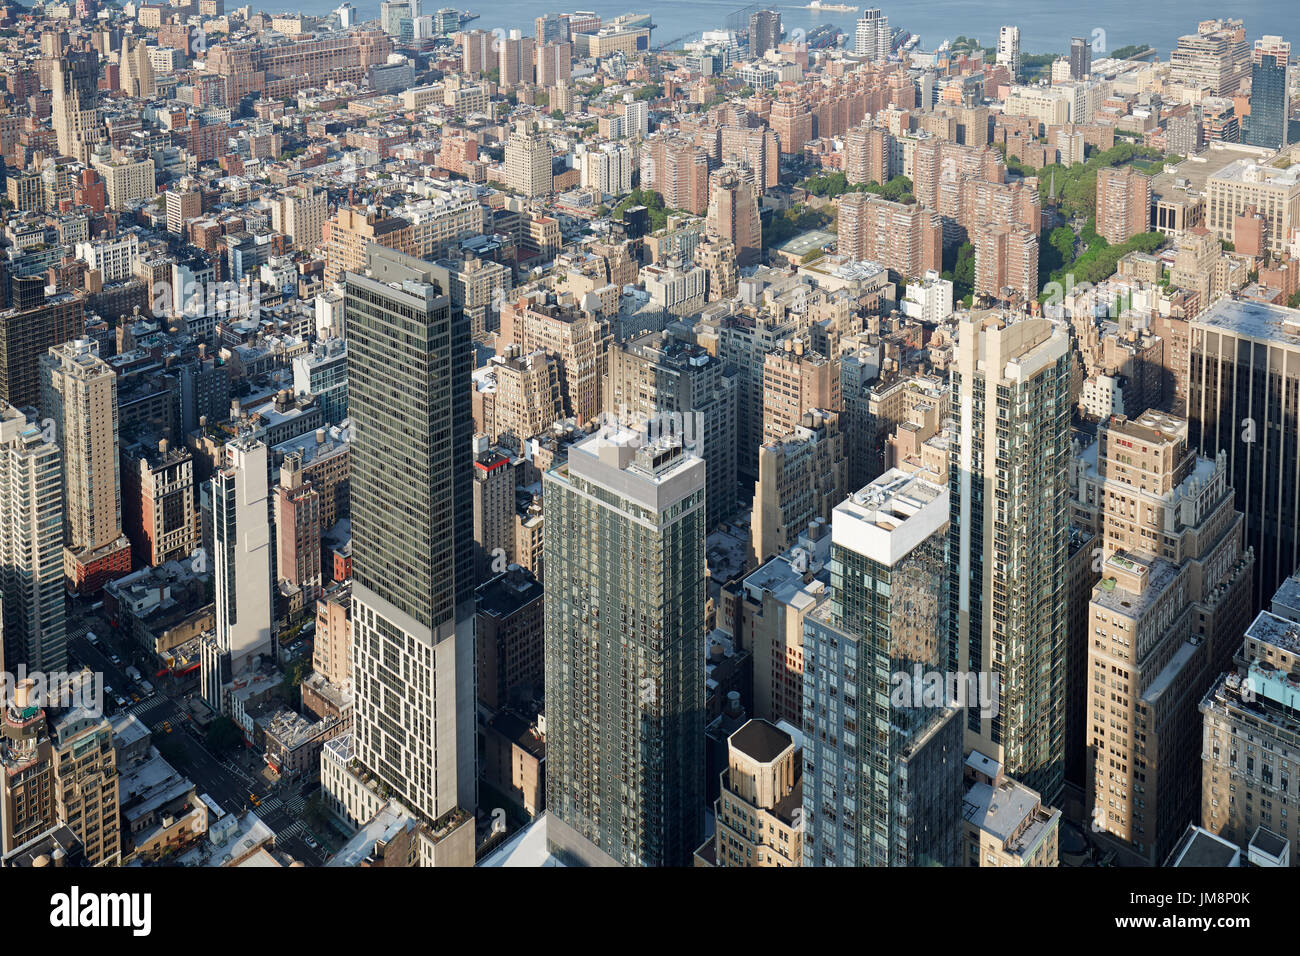 New York City midtown skyline vue aérienne avec des gratte-ciel dans la lumière du soleil Banque D'Images